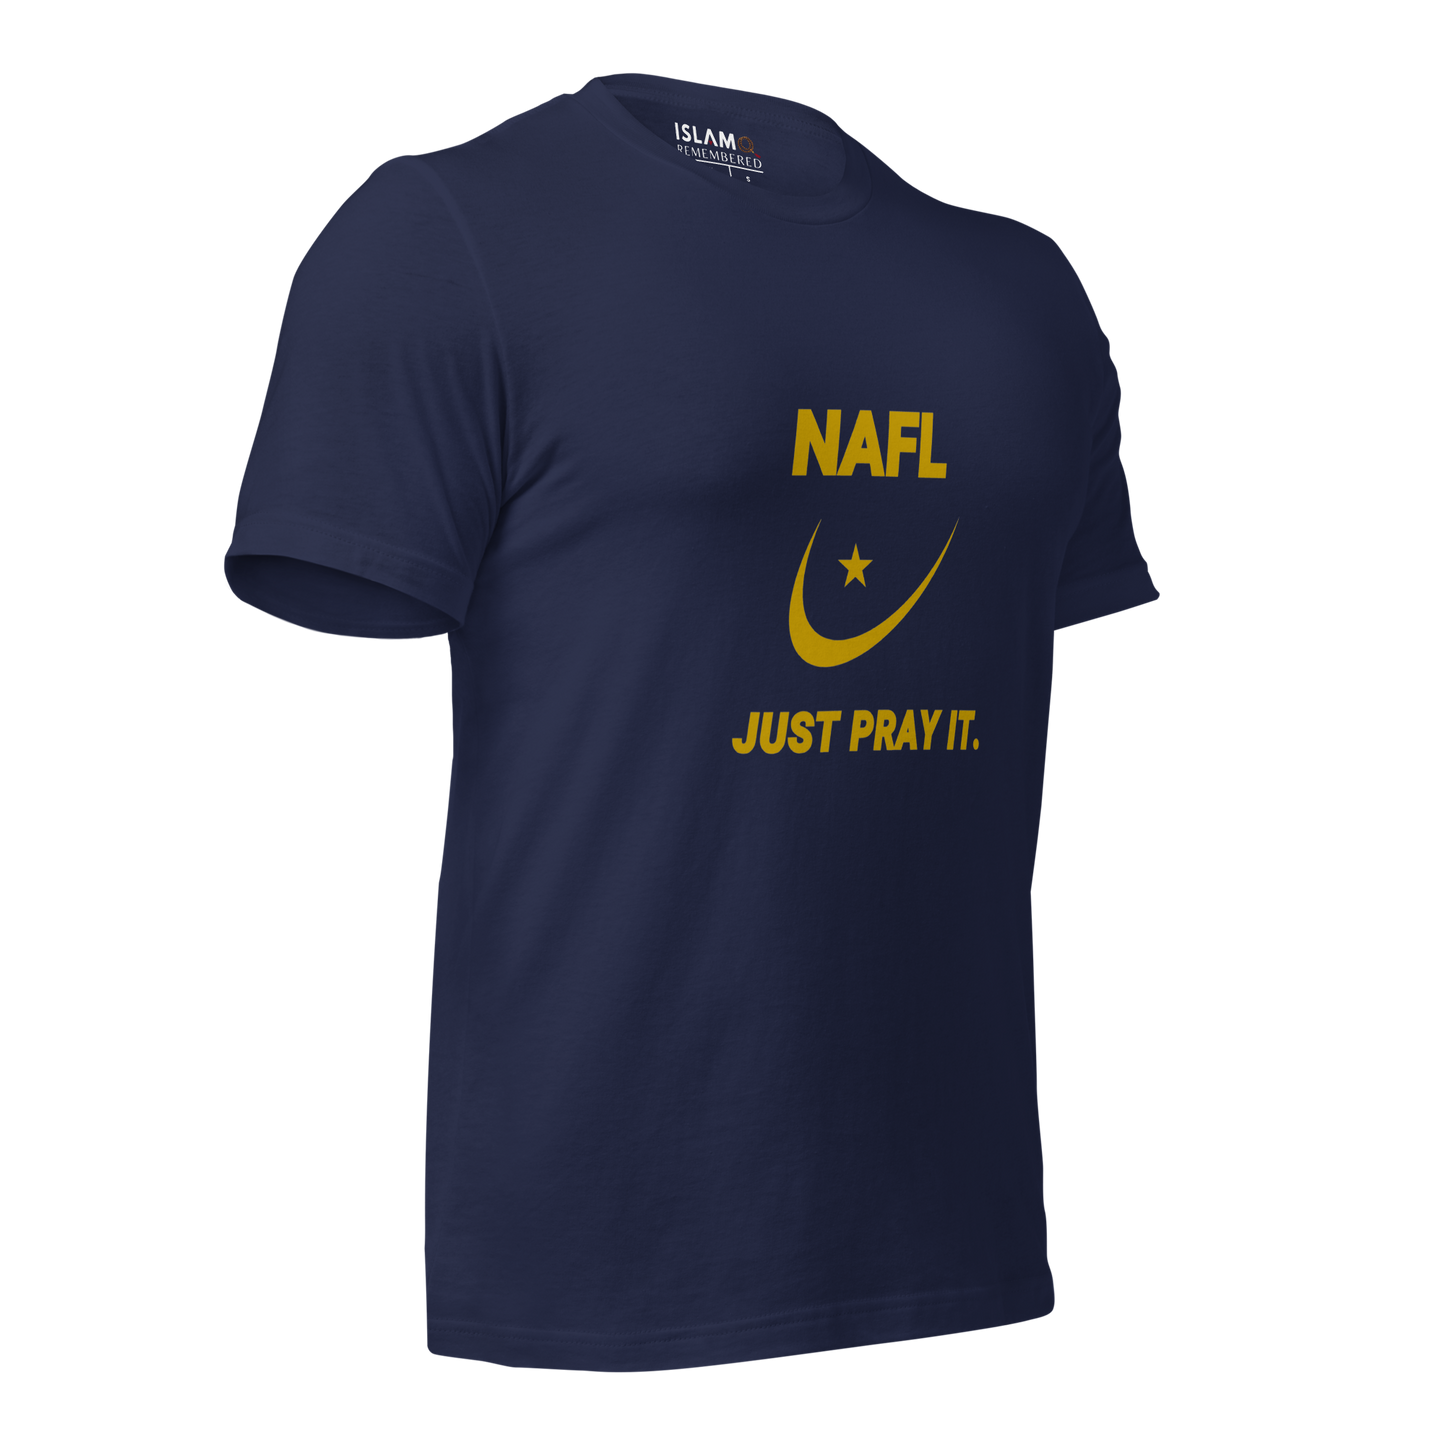 ADULT T-Shirt - NAFL JUST PRAY IT w/ Logo - Gold